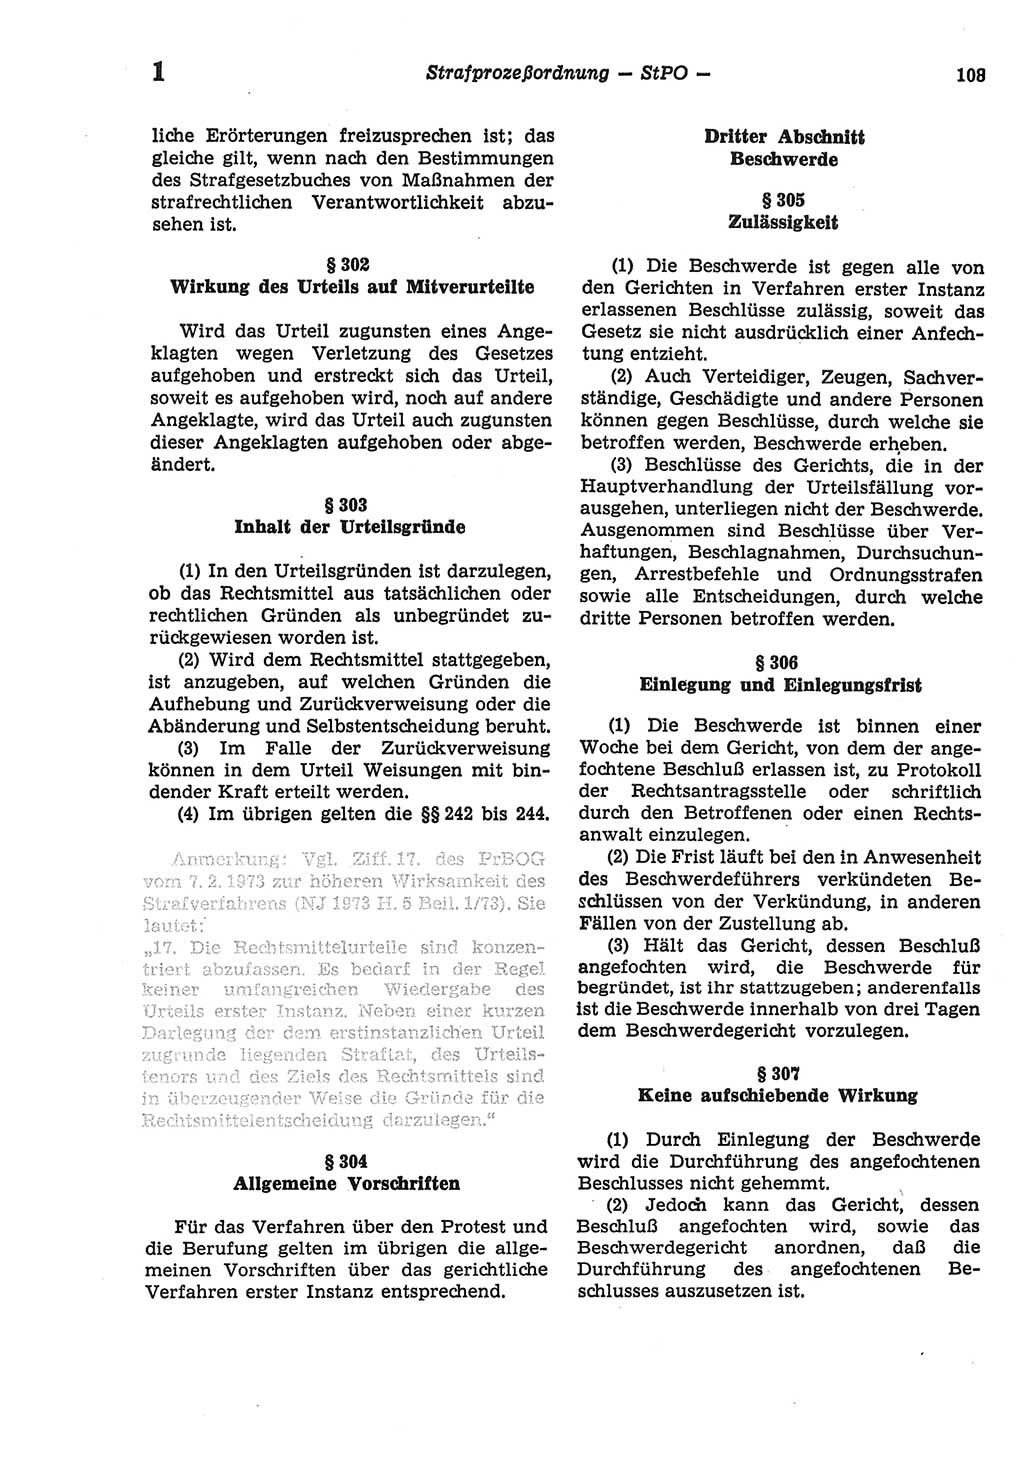 Strafprozeßordnung (StPO) der Deutschen Demokratischen Republik (DDR) sowie angrenzende Gesetze und Bestimmungen 1977, Seite 108 (StPO DDR Ges. Best. 1977, S. 108)